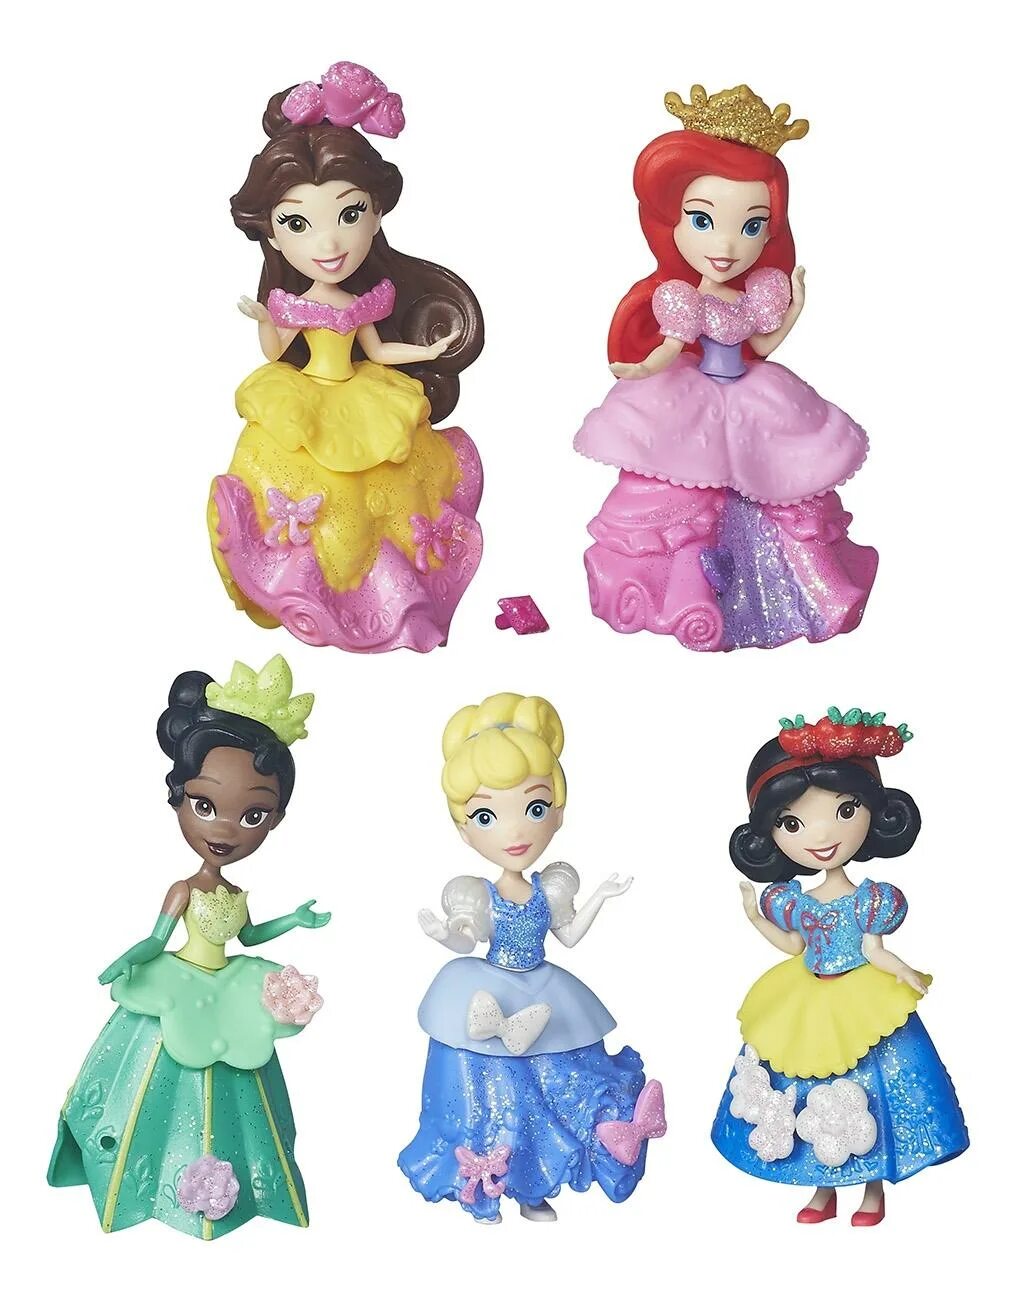 Купить принцесс дисней. Коллекция Disney Princess Hasbro. Мини куклы принцессы Дисней Белоснежка. Disney Princess Hasbro little Kingdom. Игрушка Дисней принцесс Хасбро.